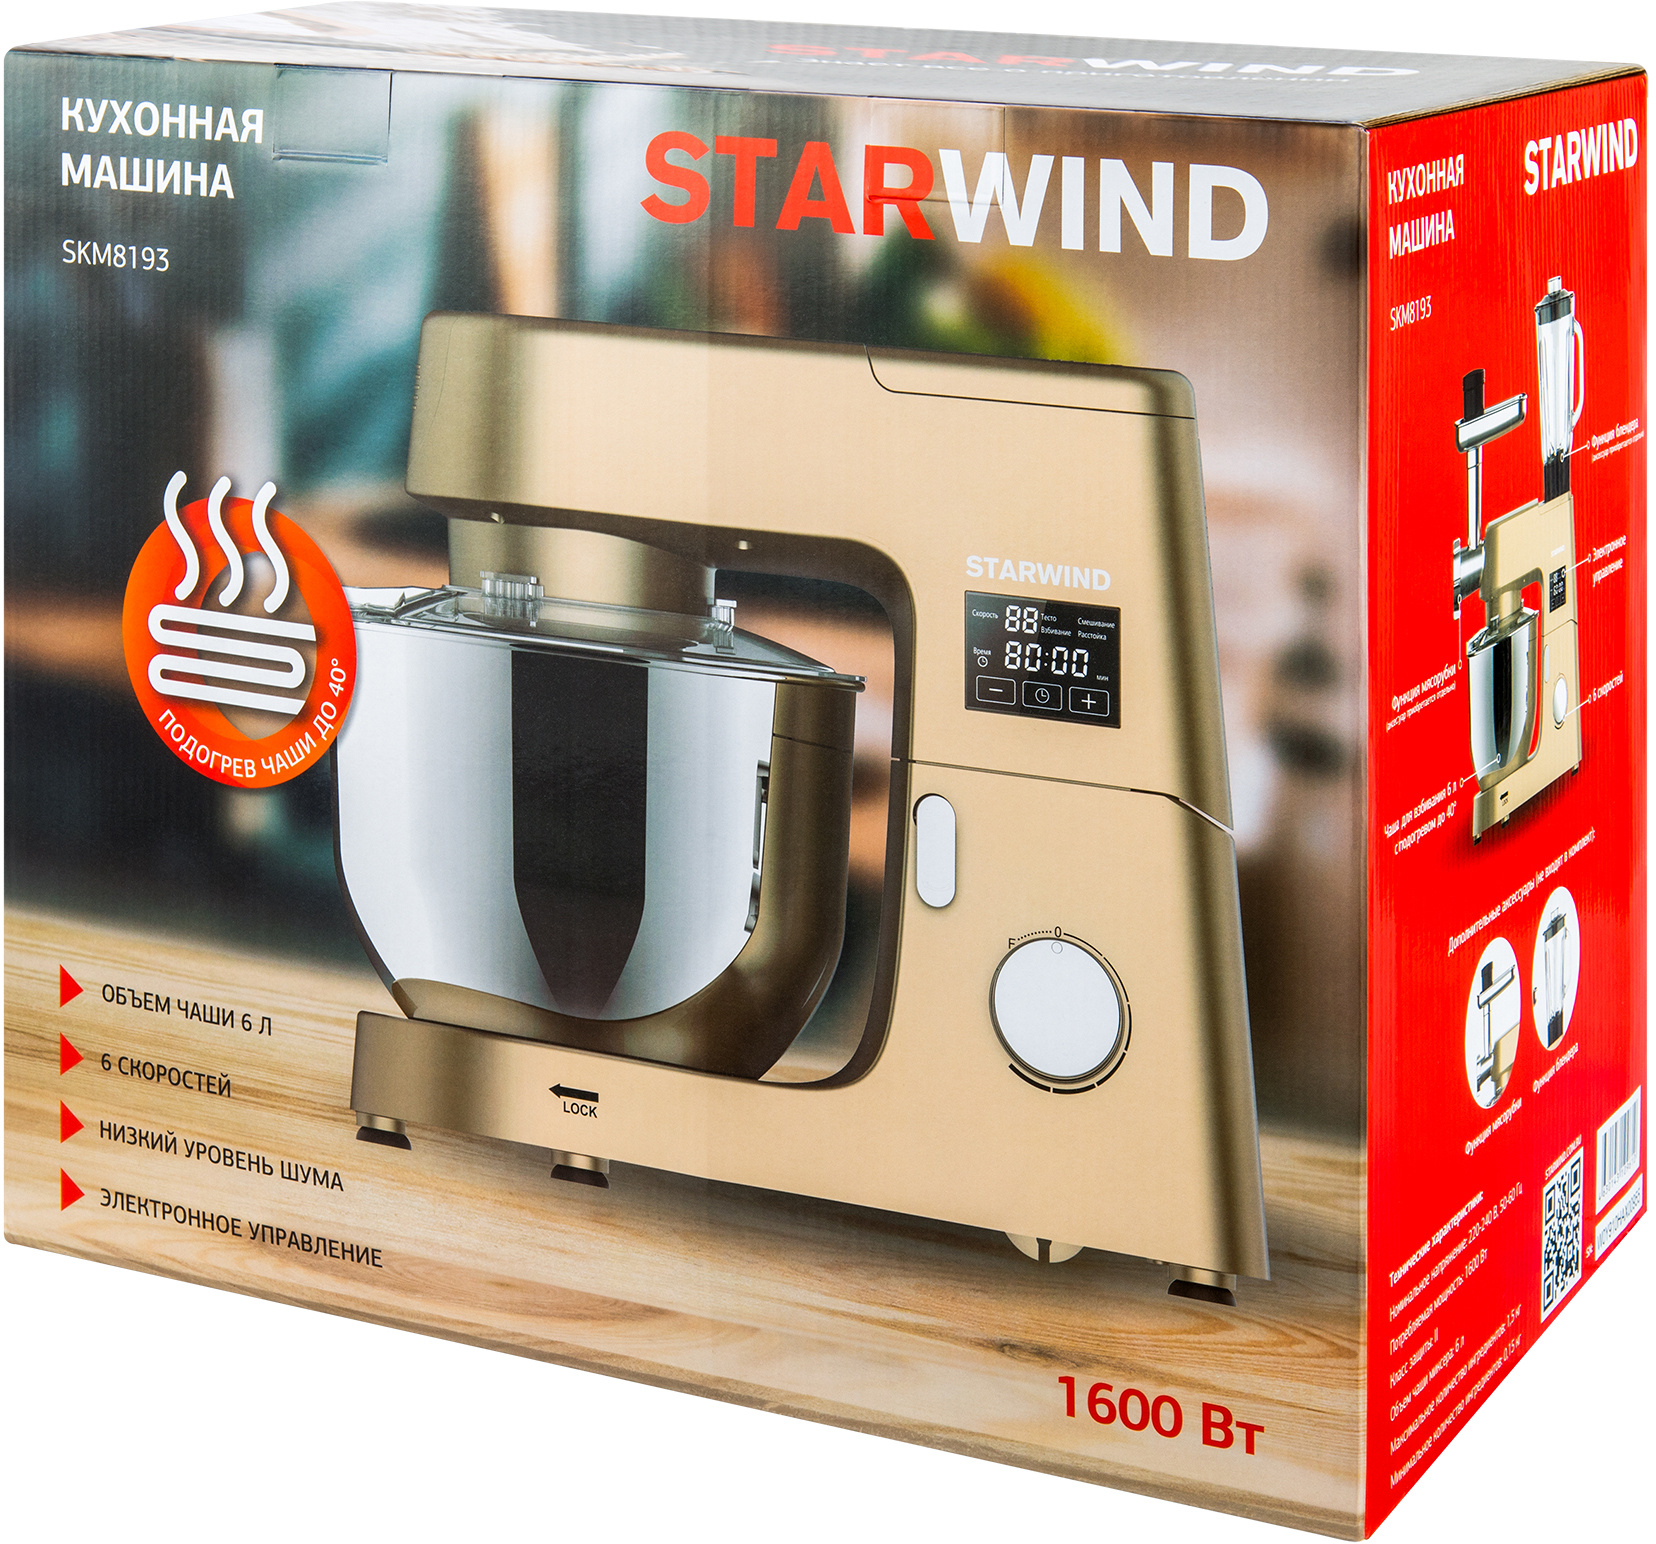 Кухонная машина Starwind SKM8193 золотистый от магазина Старвинд